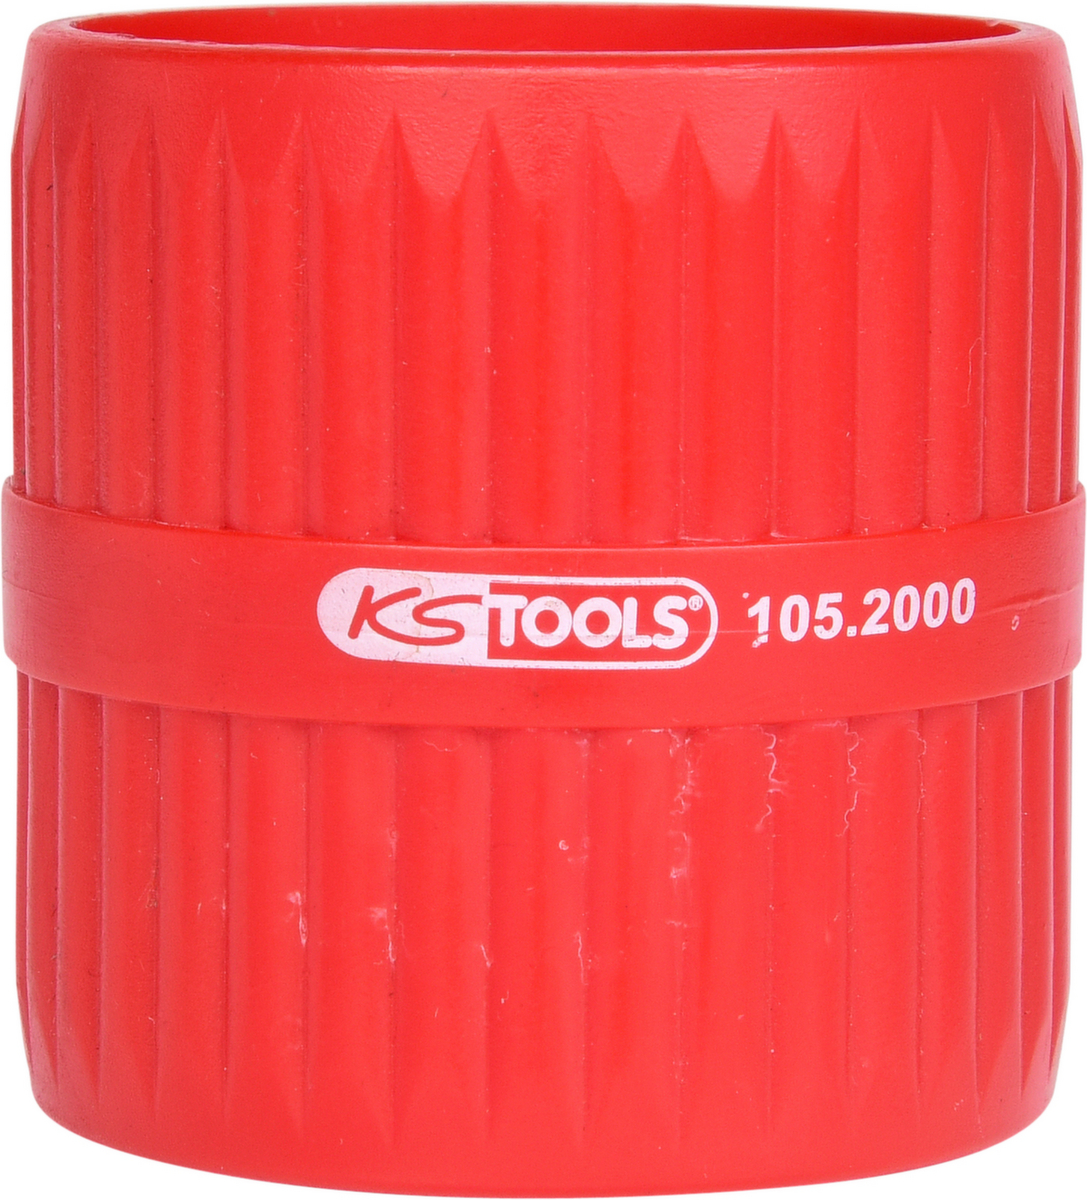 KS Tools Innen- und Außen-Entgrater Standard 3 ZOOM